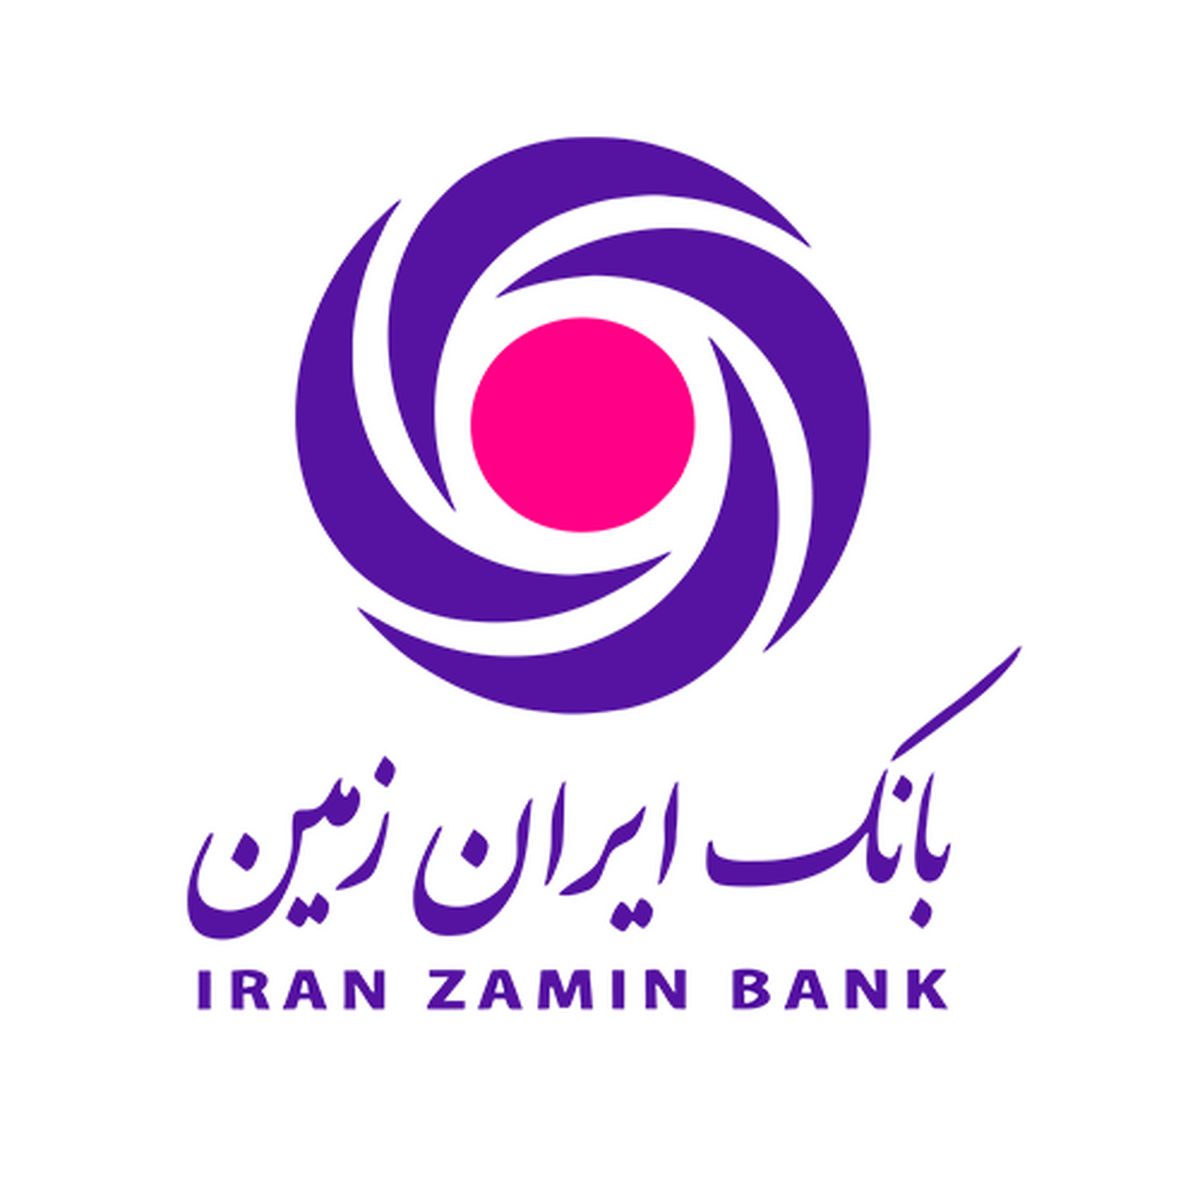 شماره آذرماه نشریه ارتباط ایران زمین منتشر شد/تجربه موفق از نخستین هم افزایی بین بانکی به همت بانک ایران زمین